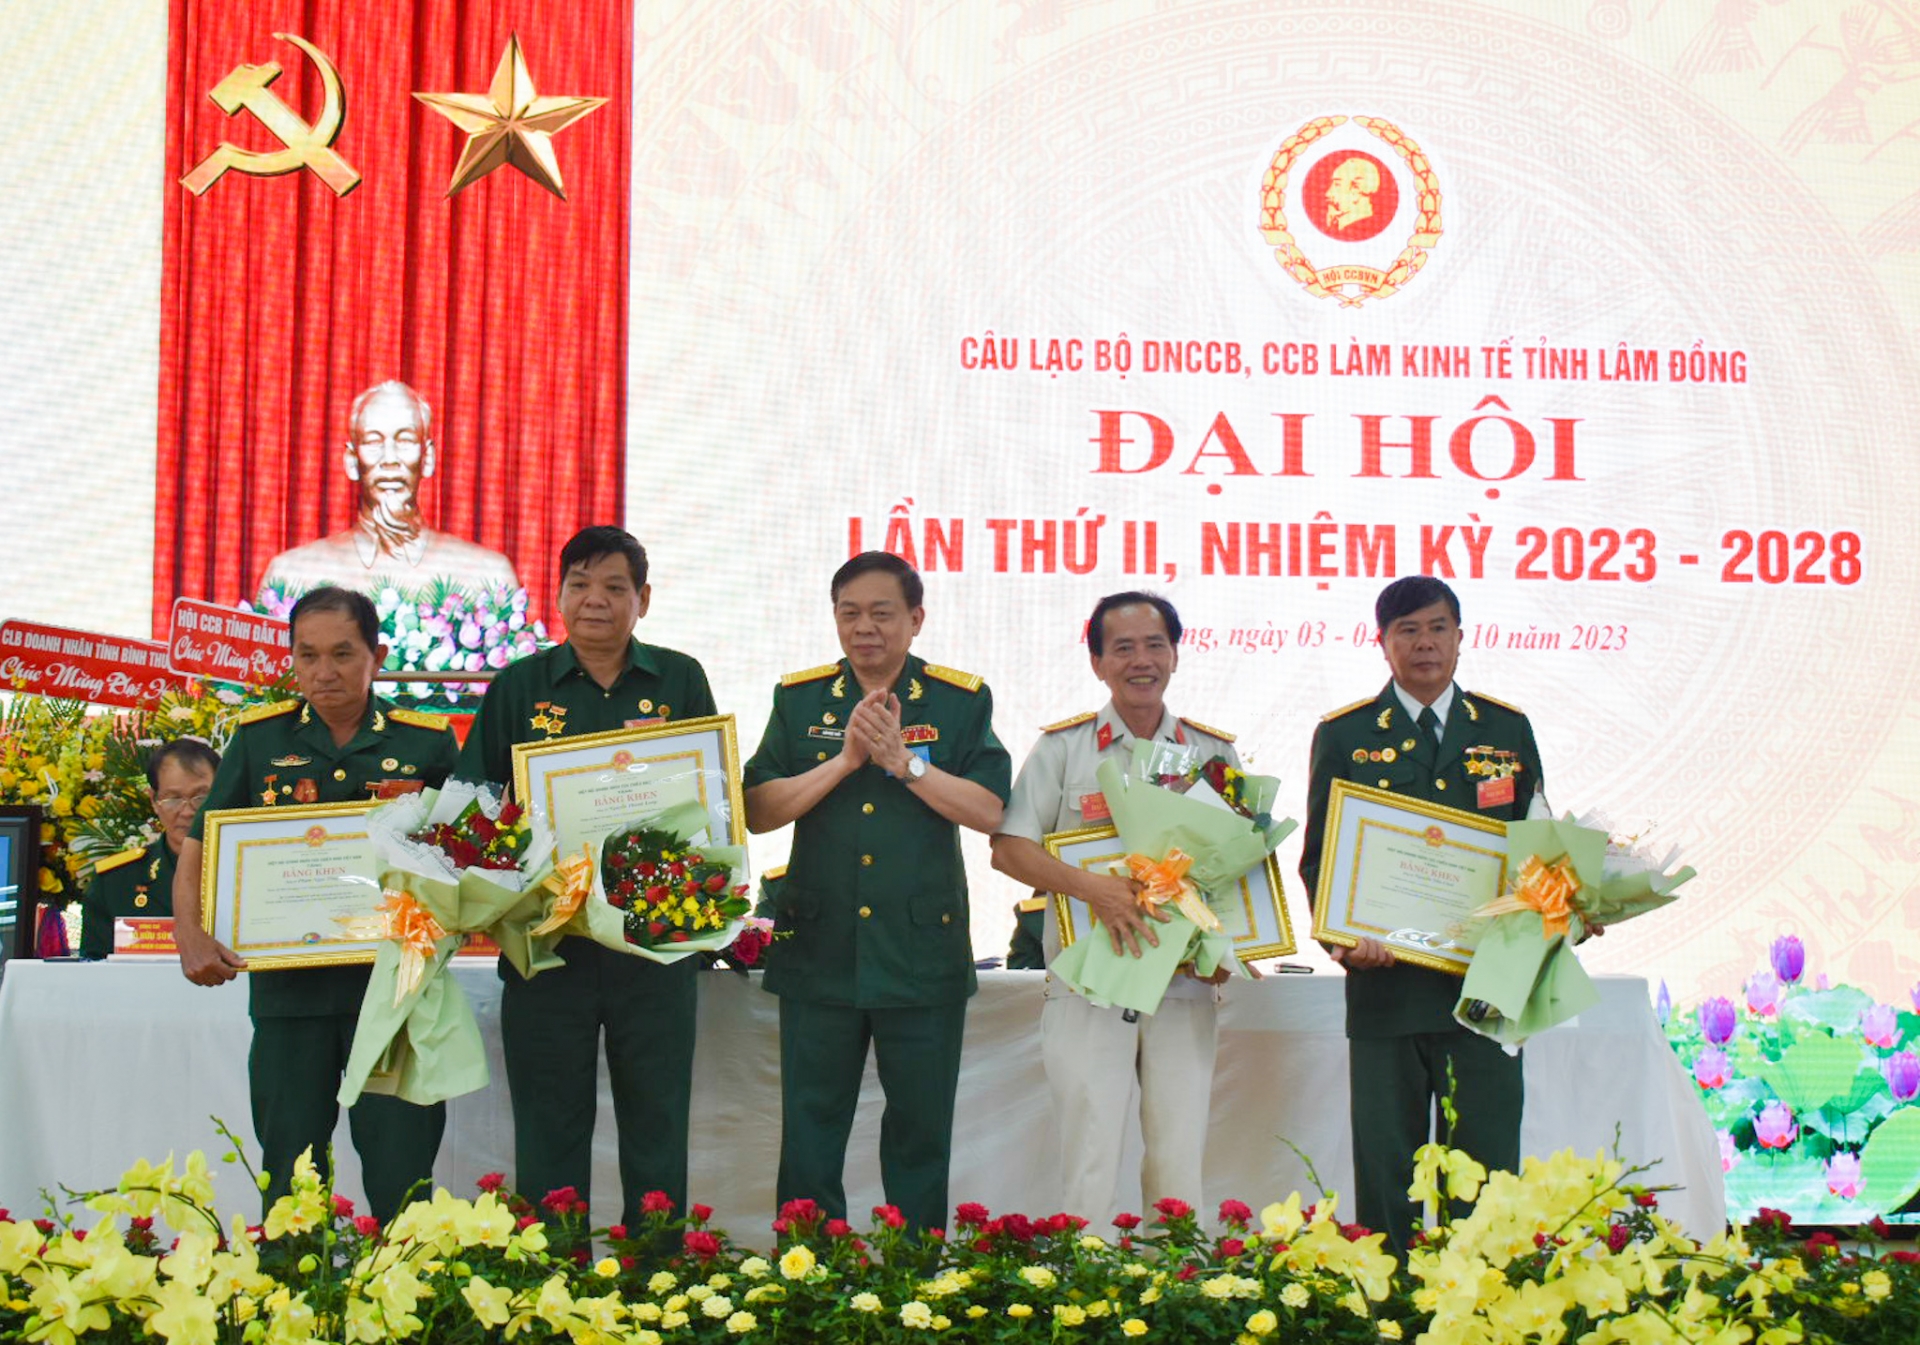 Hiệp Hội Doanh nhân CCB Việt Nam tặng bằng khen cho 4 cá nhân có thành tích xuất sắc